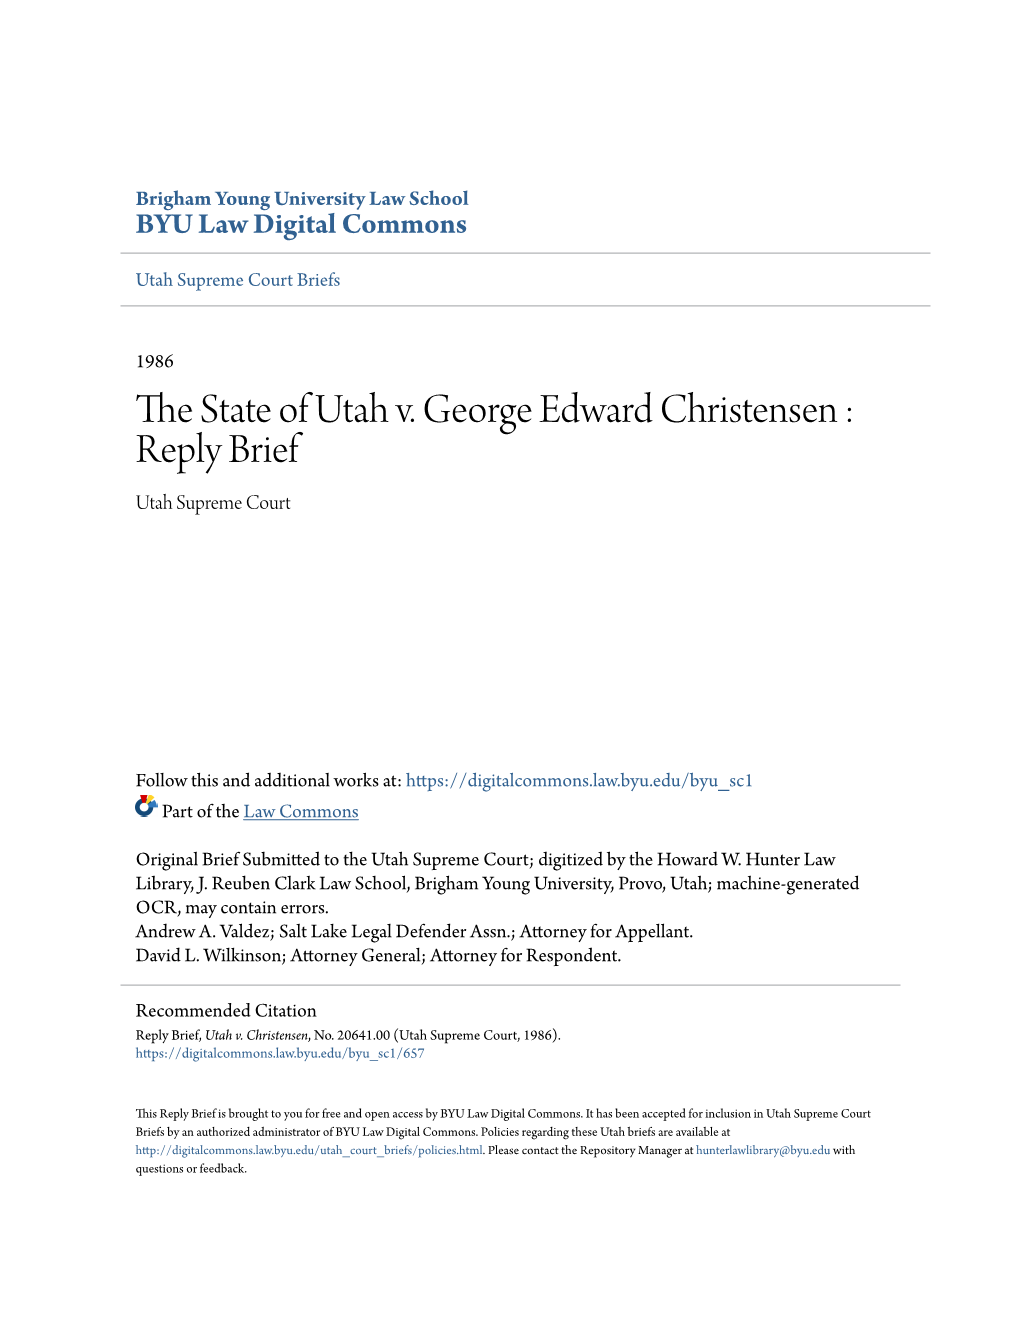 The State of Utah V. George Edward Christensen